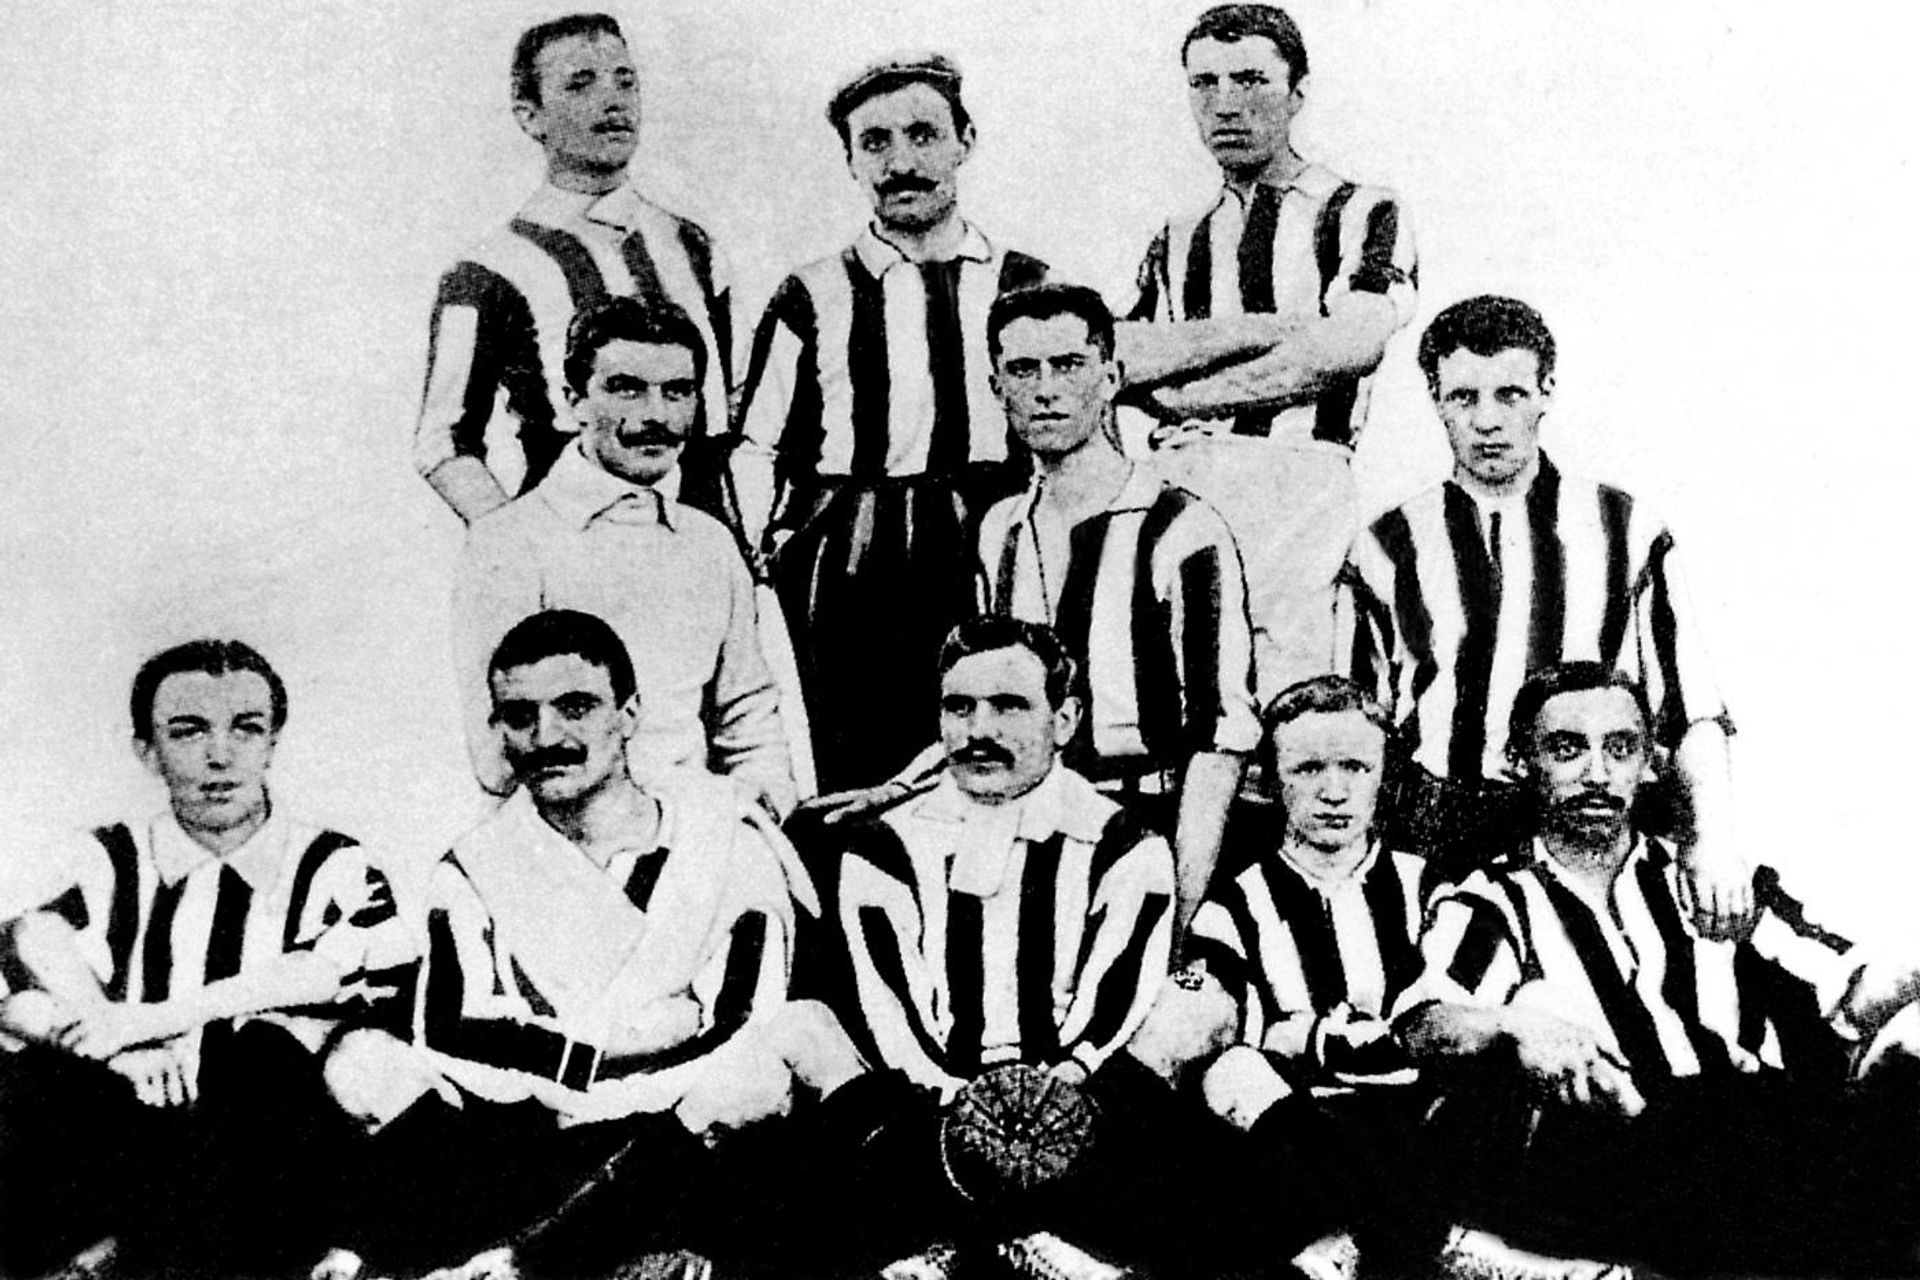 La formazione della Juventus nel 1905 i bianconeri sono il club calcistico più titolato d'Italia, con 36 scudetti sino 2022